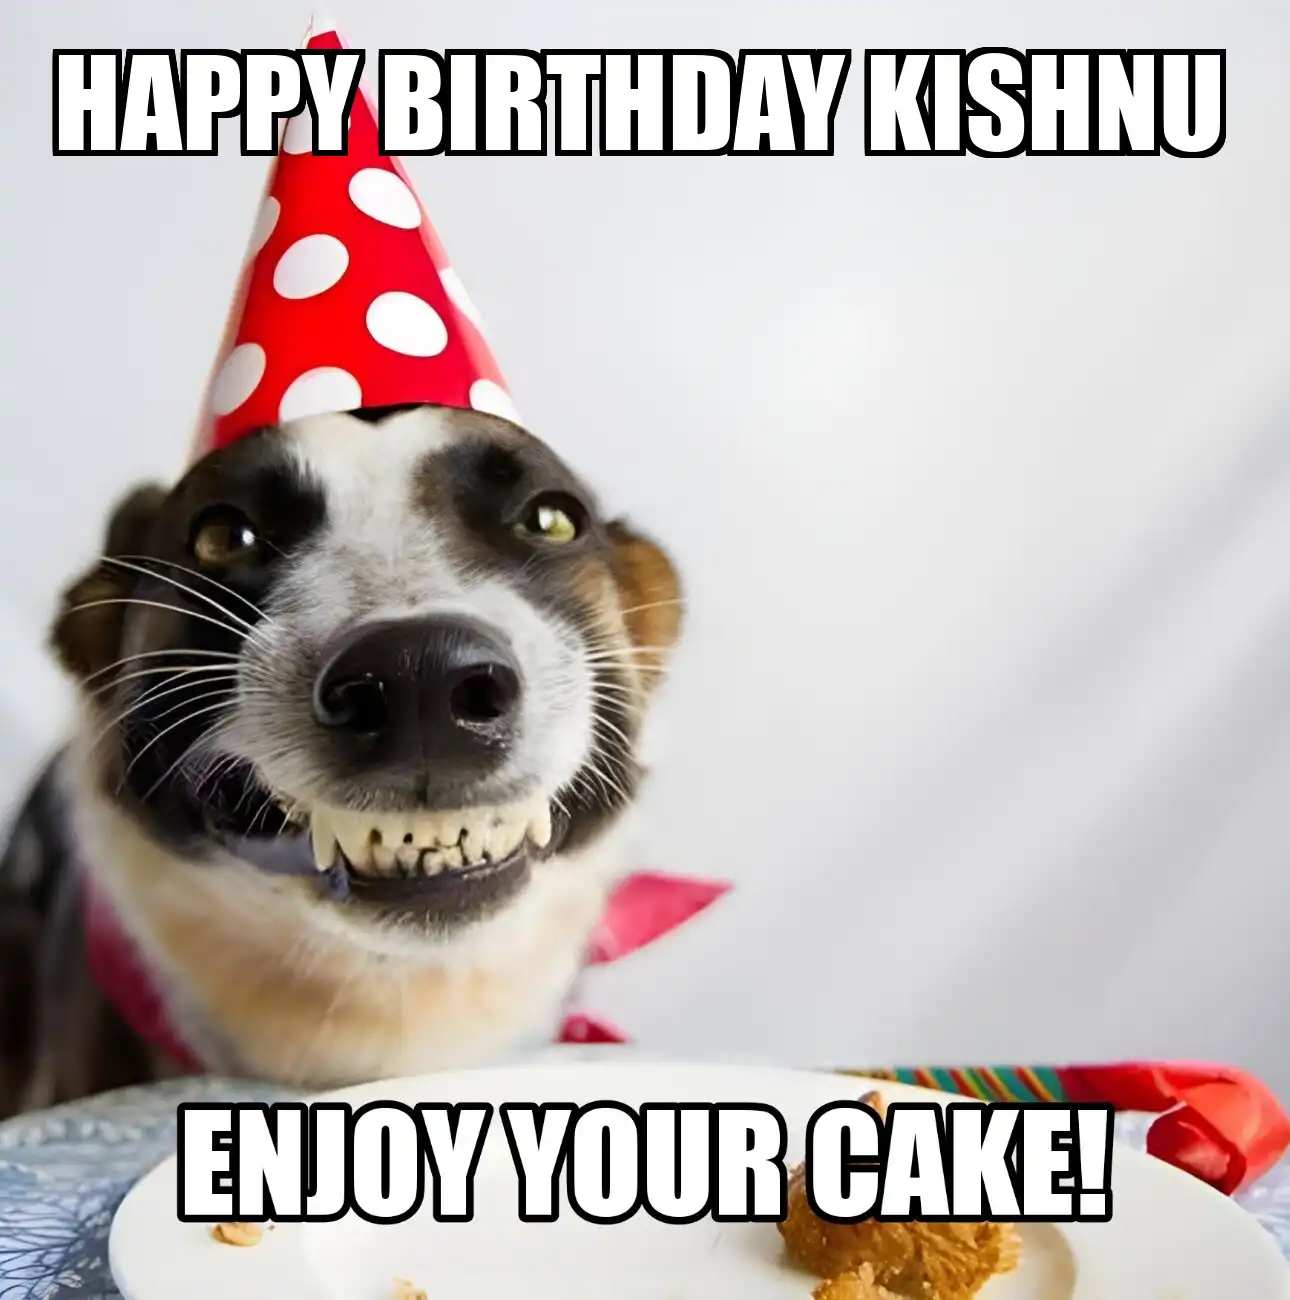 Happy Birthday Kishnu Enjoy Your Cake Dog Meme